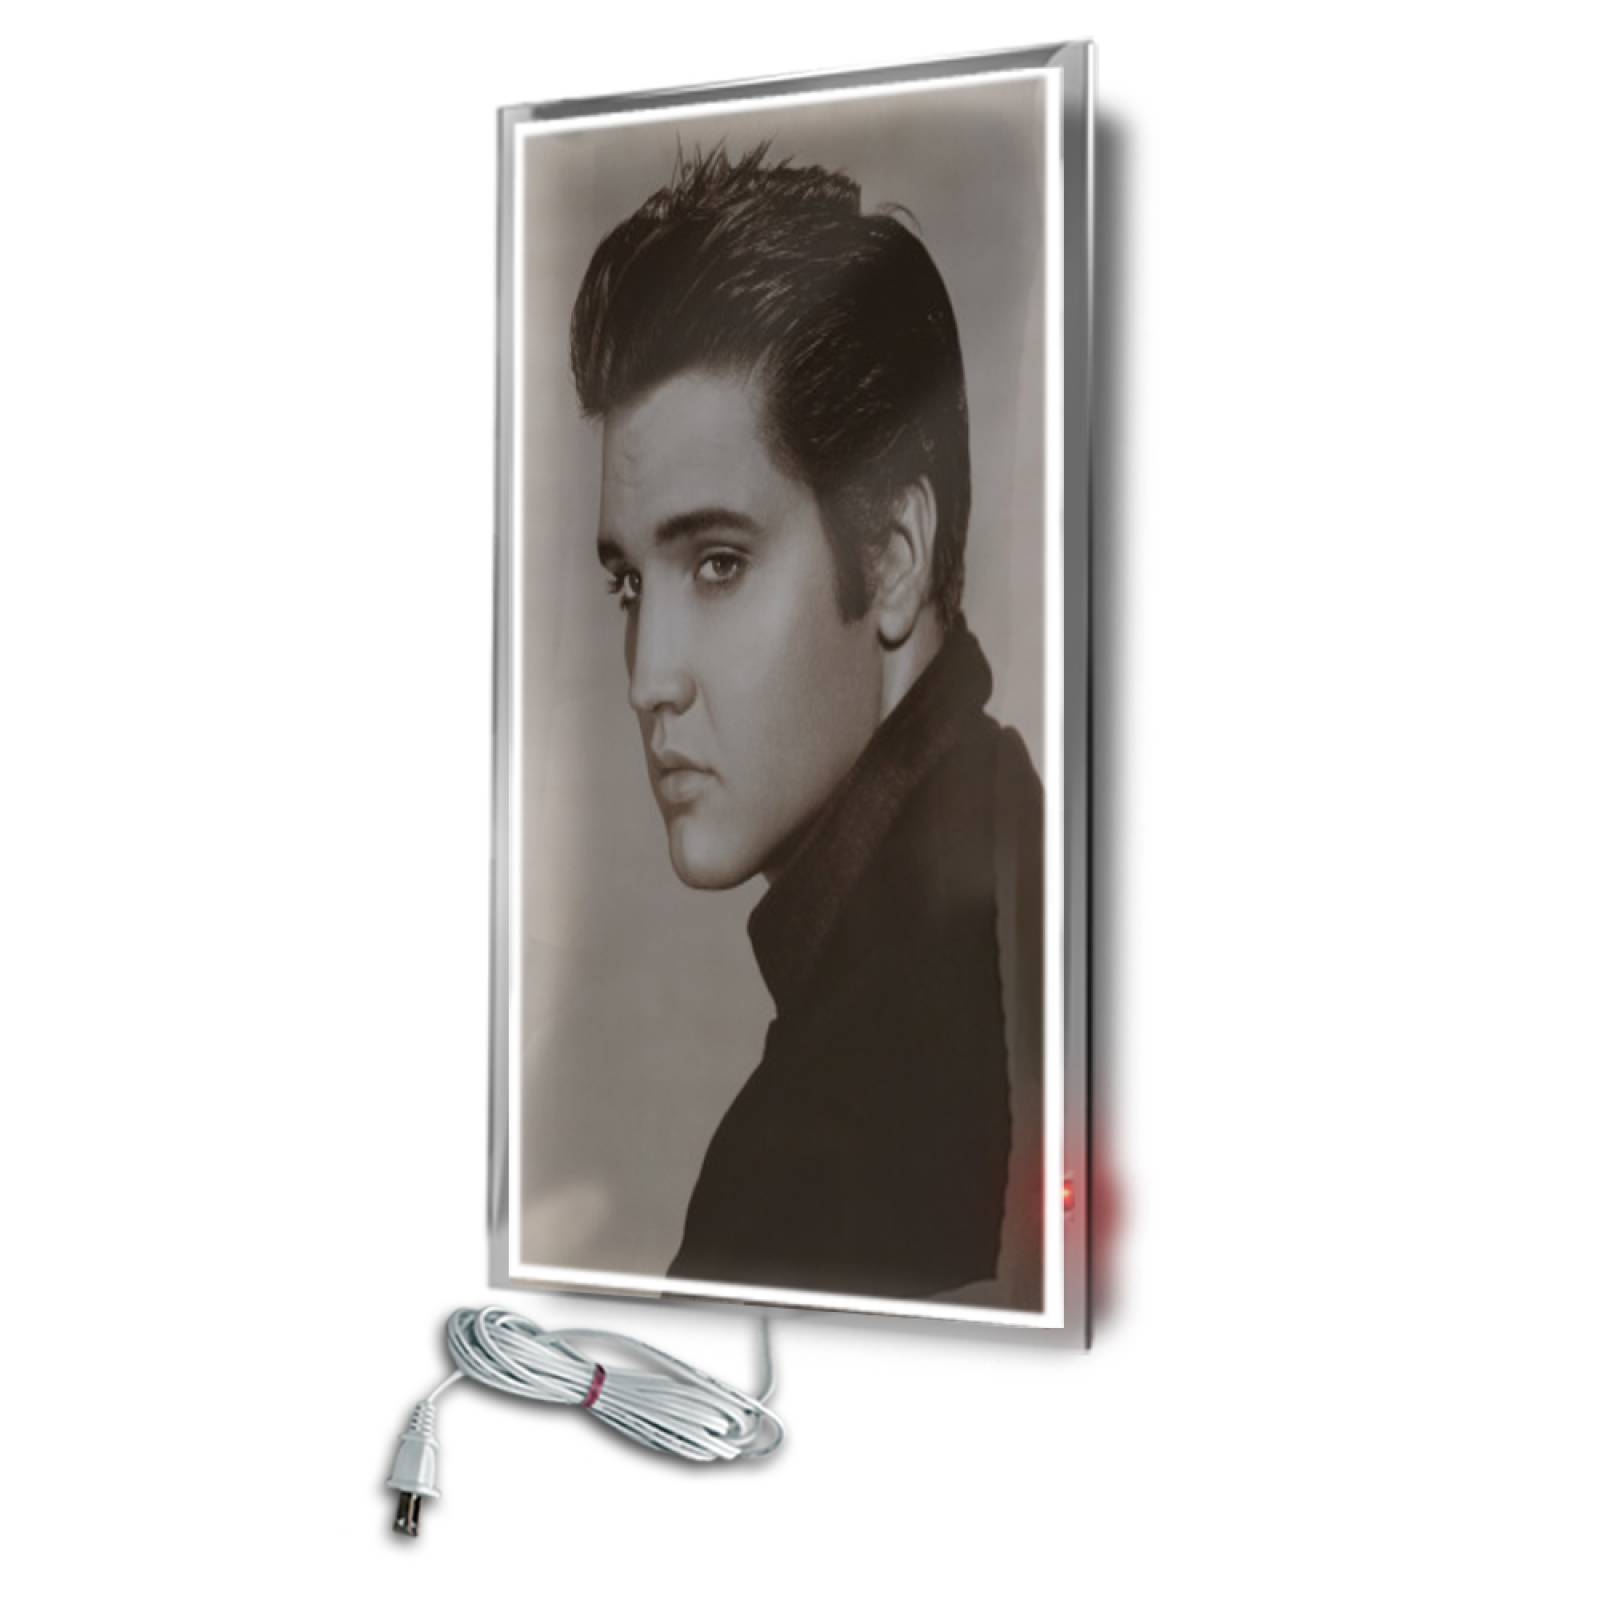 Calefactor de Panel infrarrojo en Cristal para Pared, California Wave Elvis Presley de 380W 60x90cm, Mod: 080CaSol